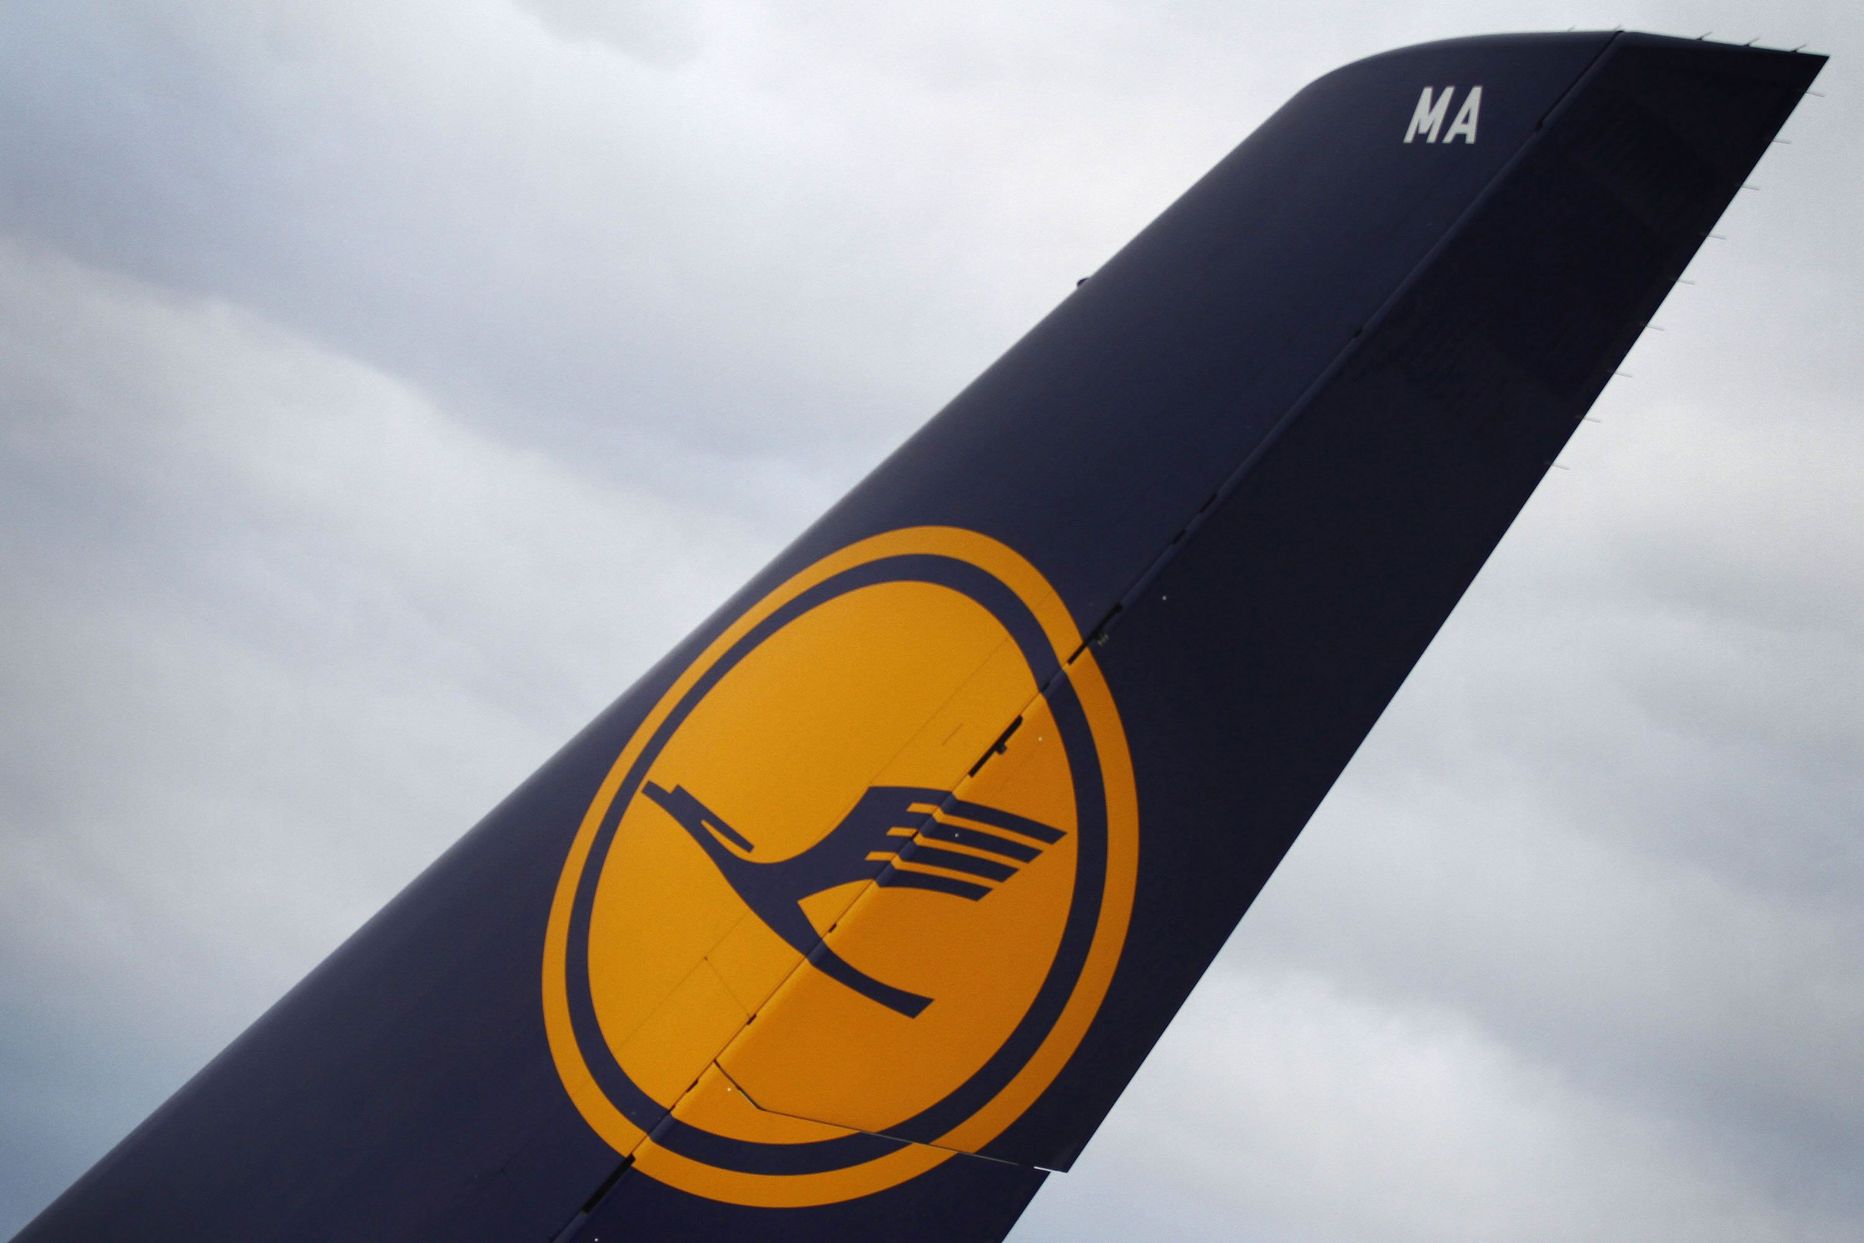 Lufthansa logo.